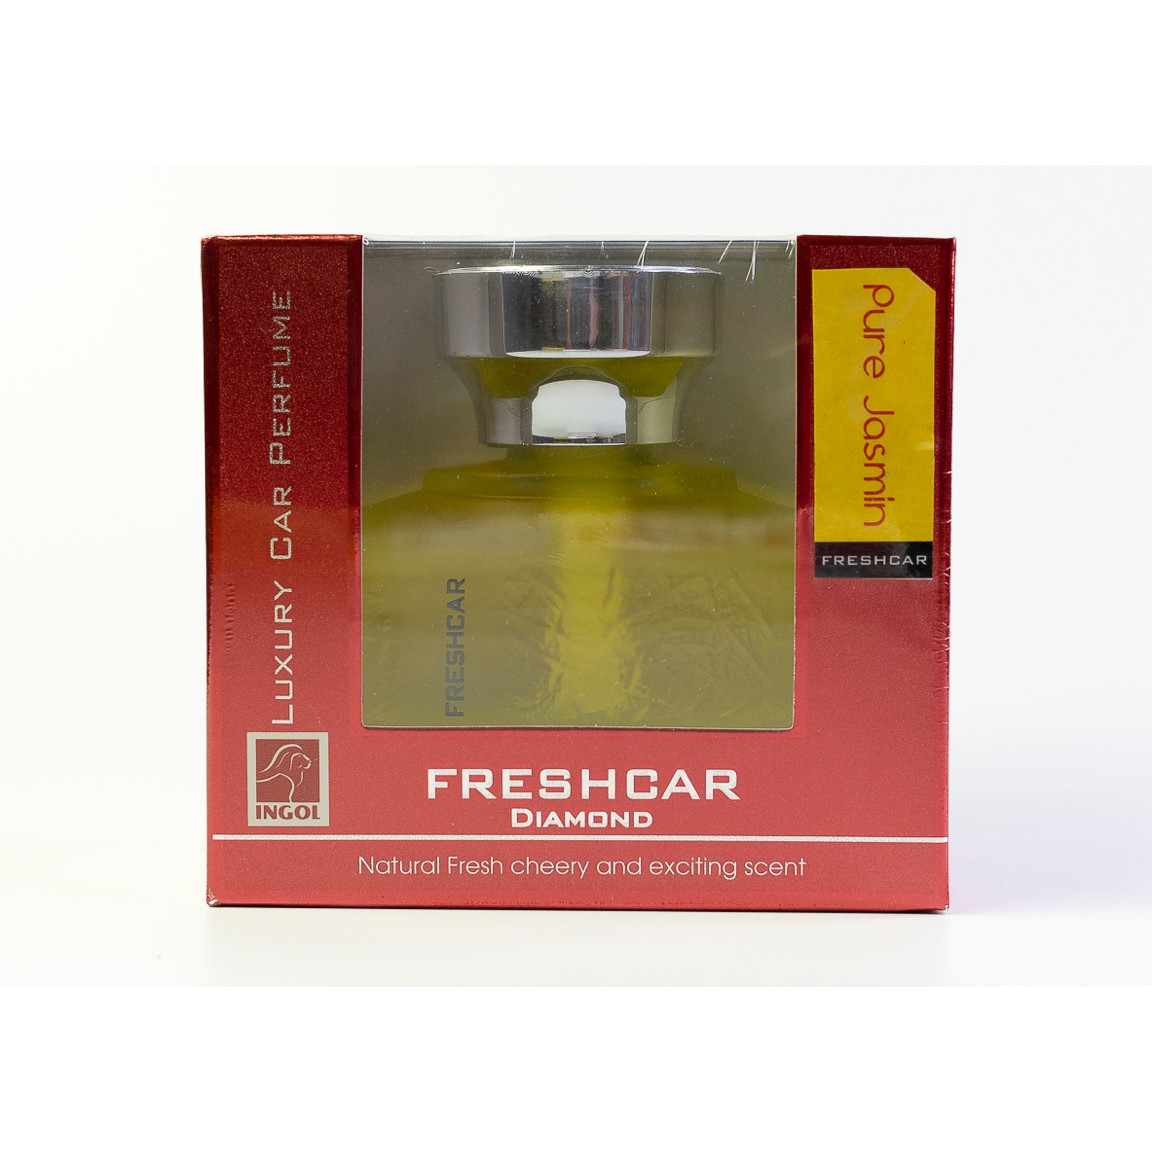 Nước hoa xe hơi Freshcar Diamond - chai 100ml hương thơm thảo mộc thiên nhiên